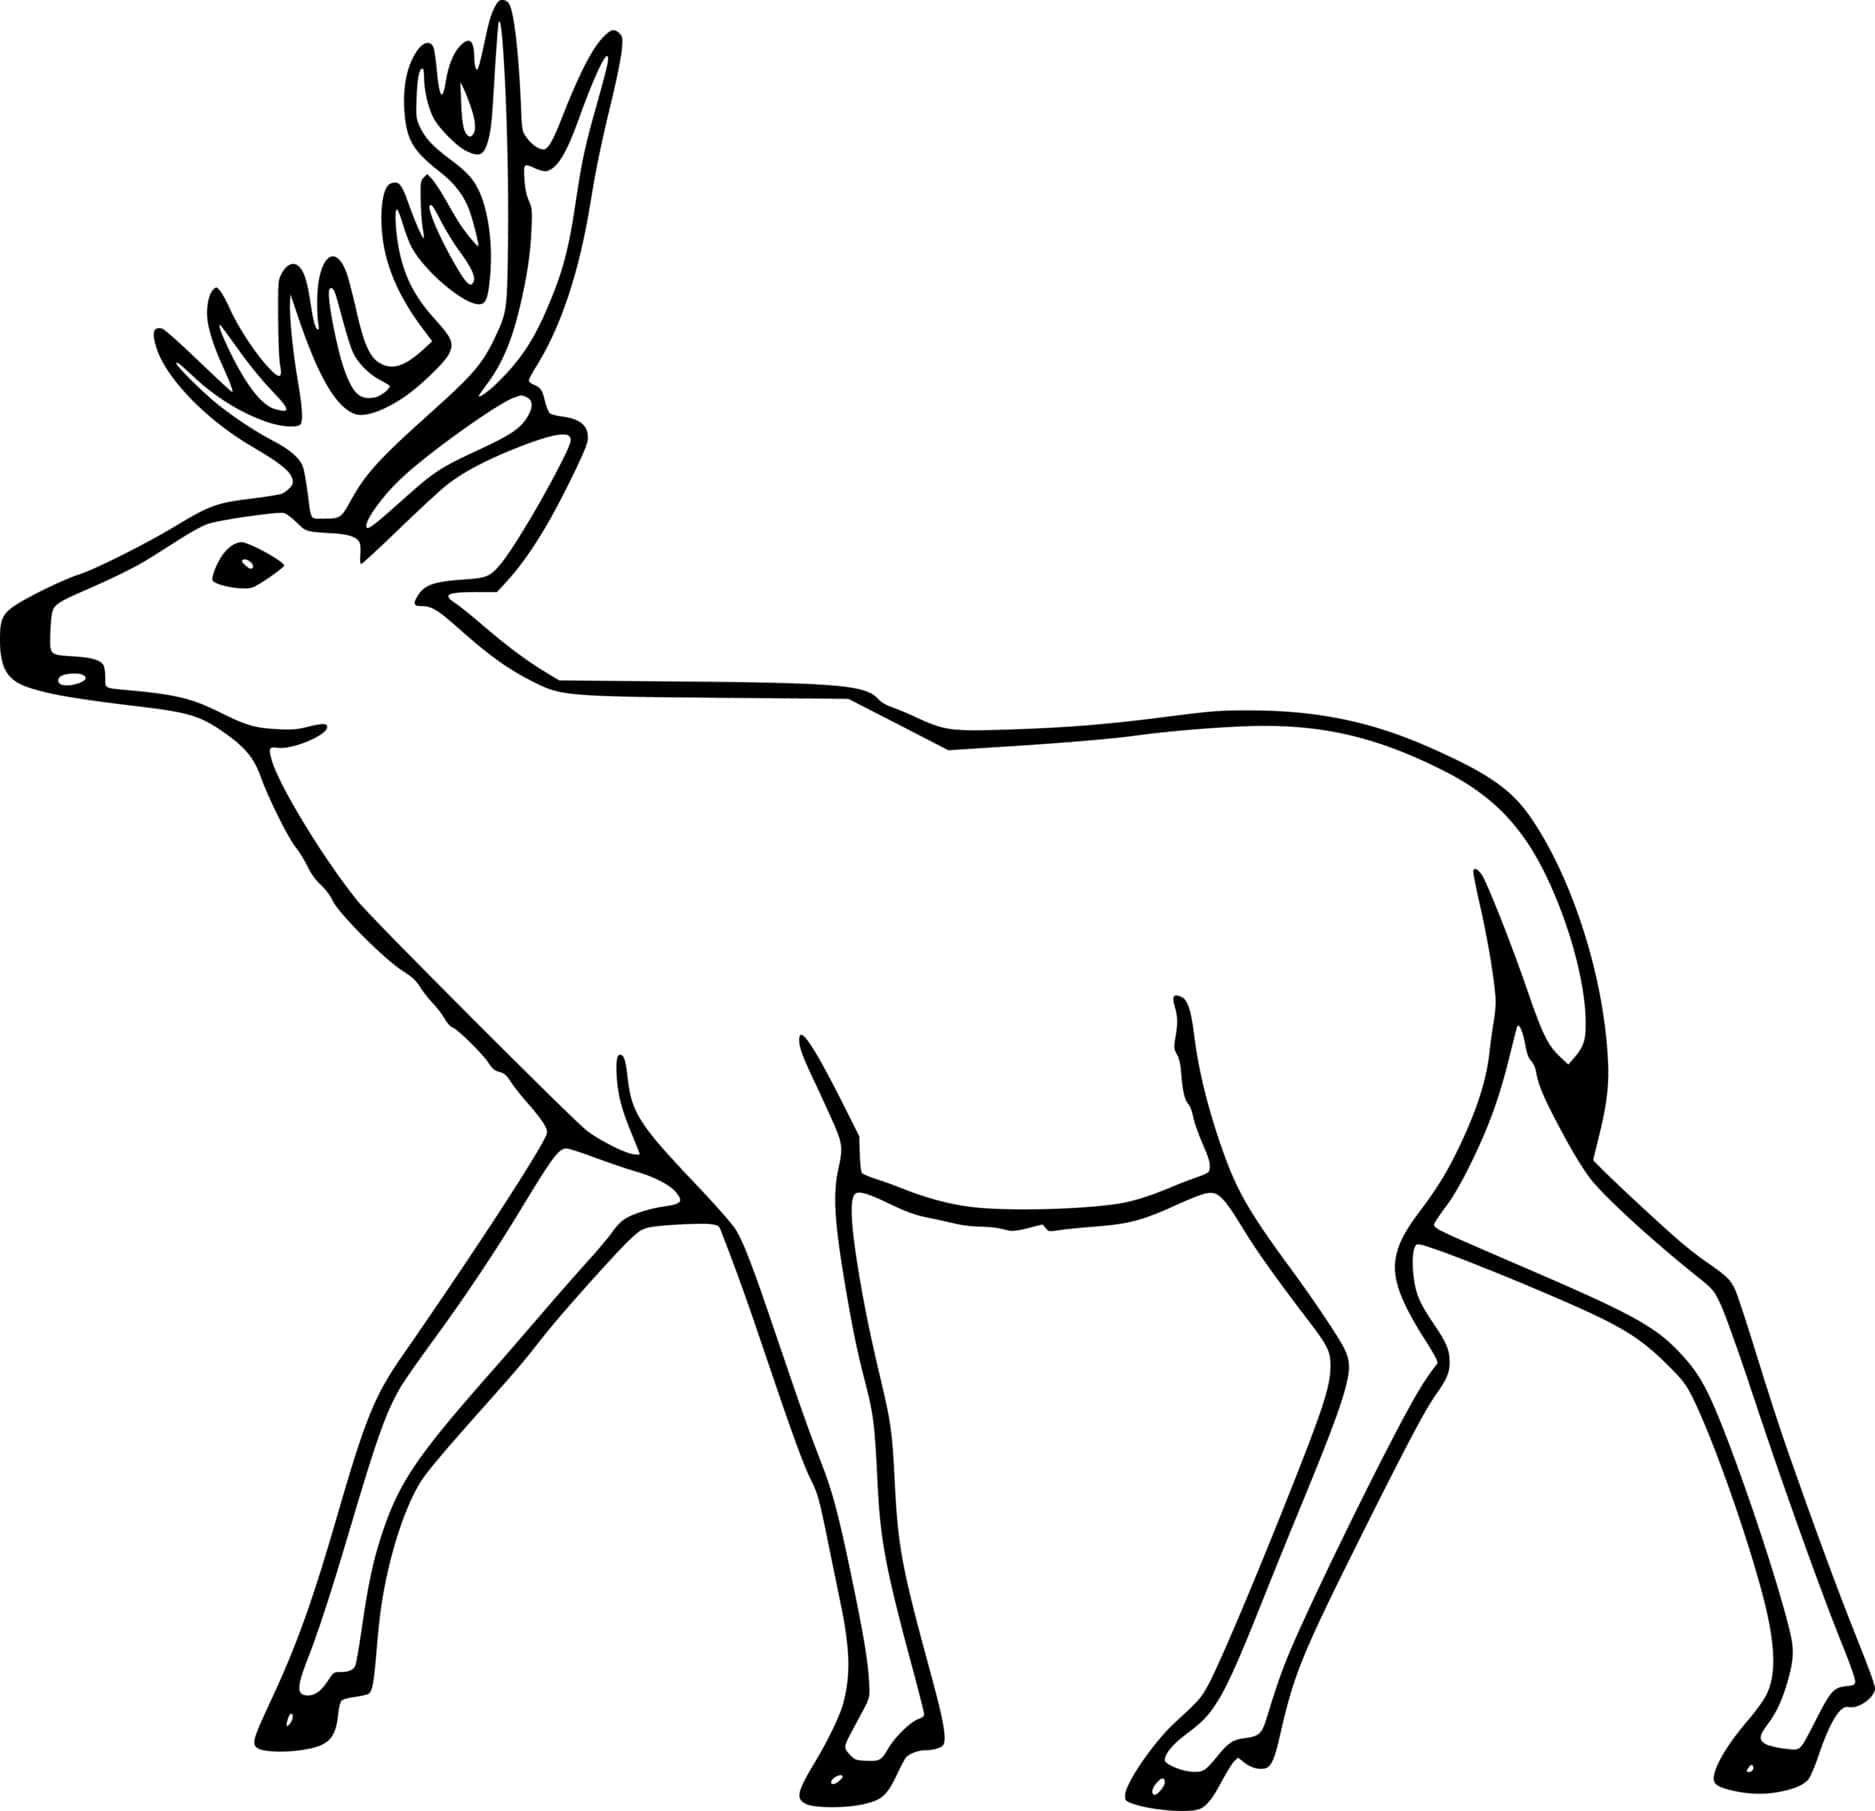 Simple Walking Deer Coloring Page